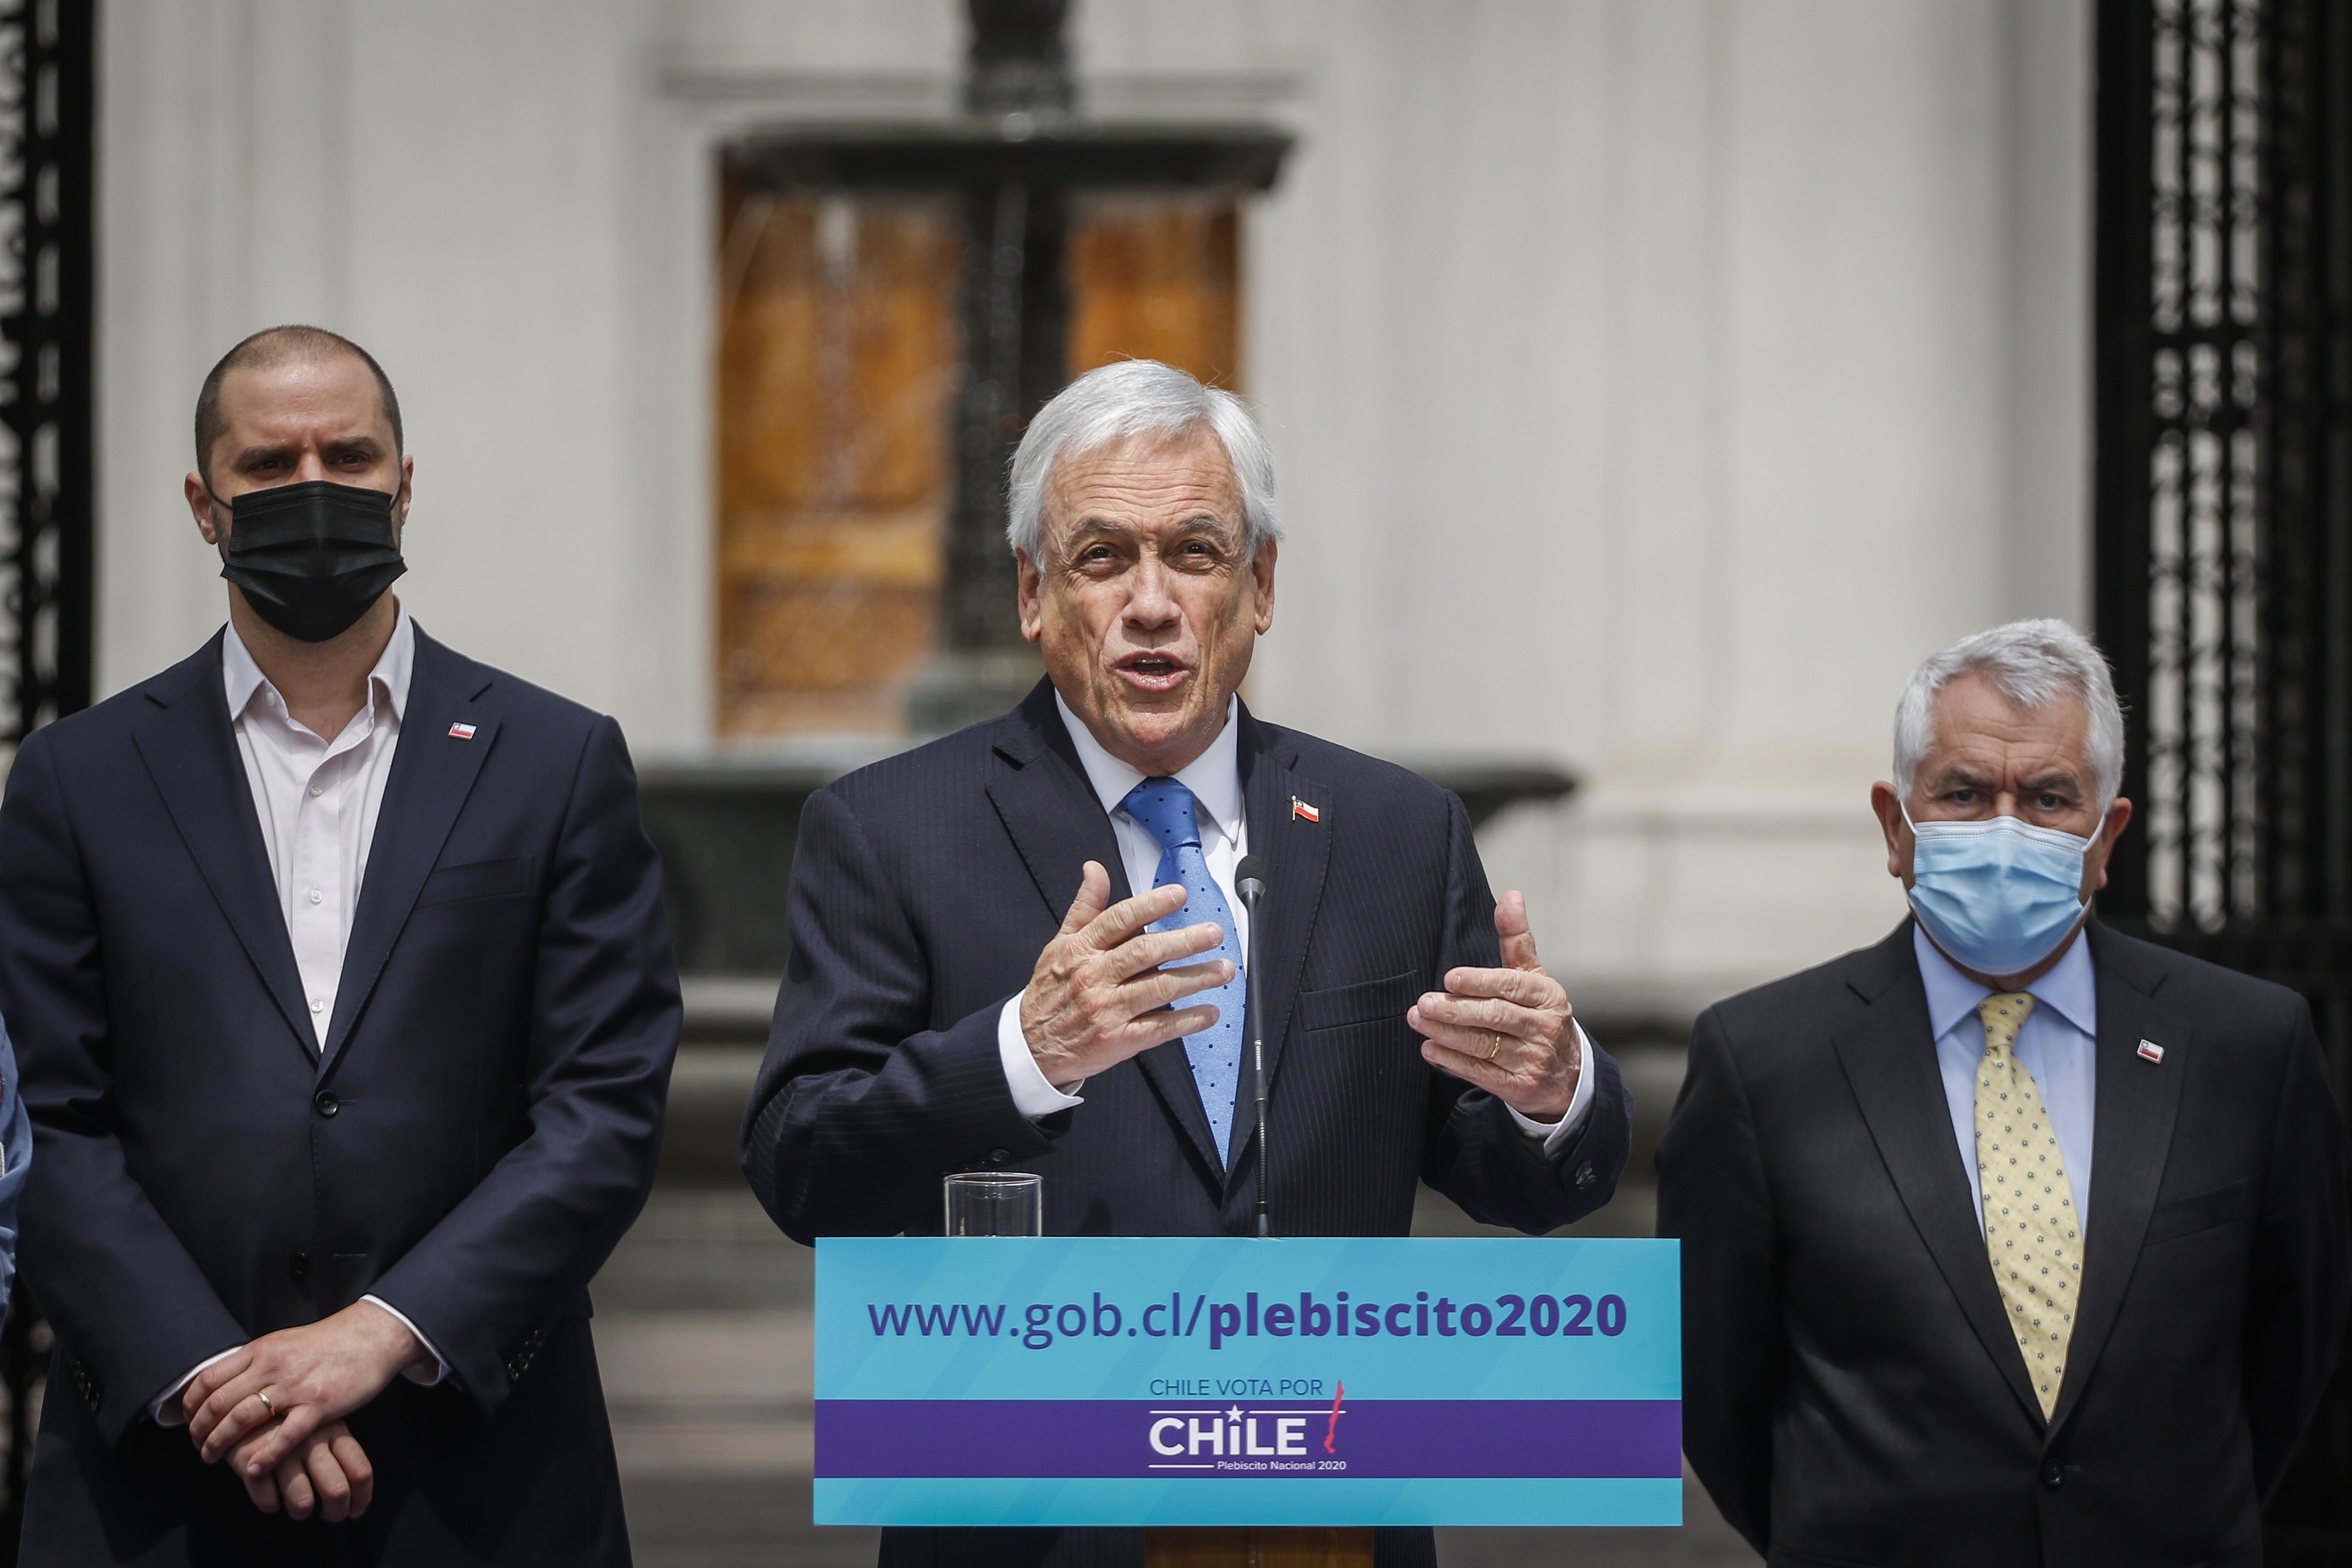 El Presidente De La Republica Presenta La Campaña Chile Vota Por Chile